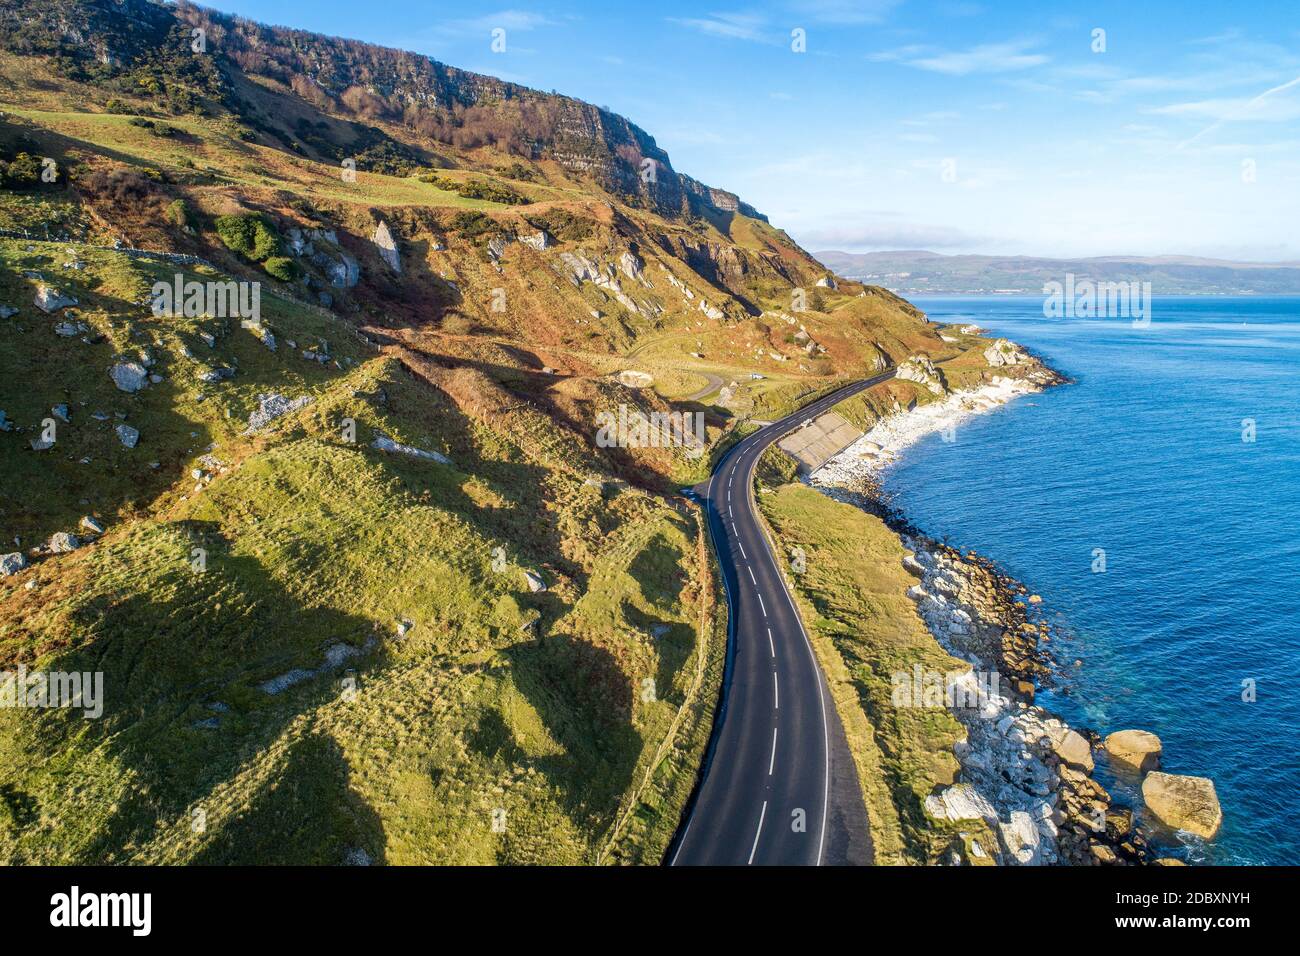 Die Ostküste von Nordirland und Causeway Coastal Route alias Antrim Coast  Road A2. Eine der malerischsten Küstenstraßen Europas. Antenne vi  Stockfotografie - Alamy